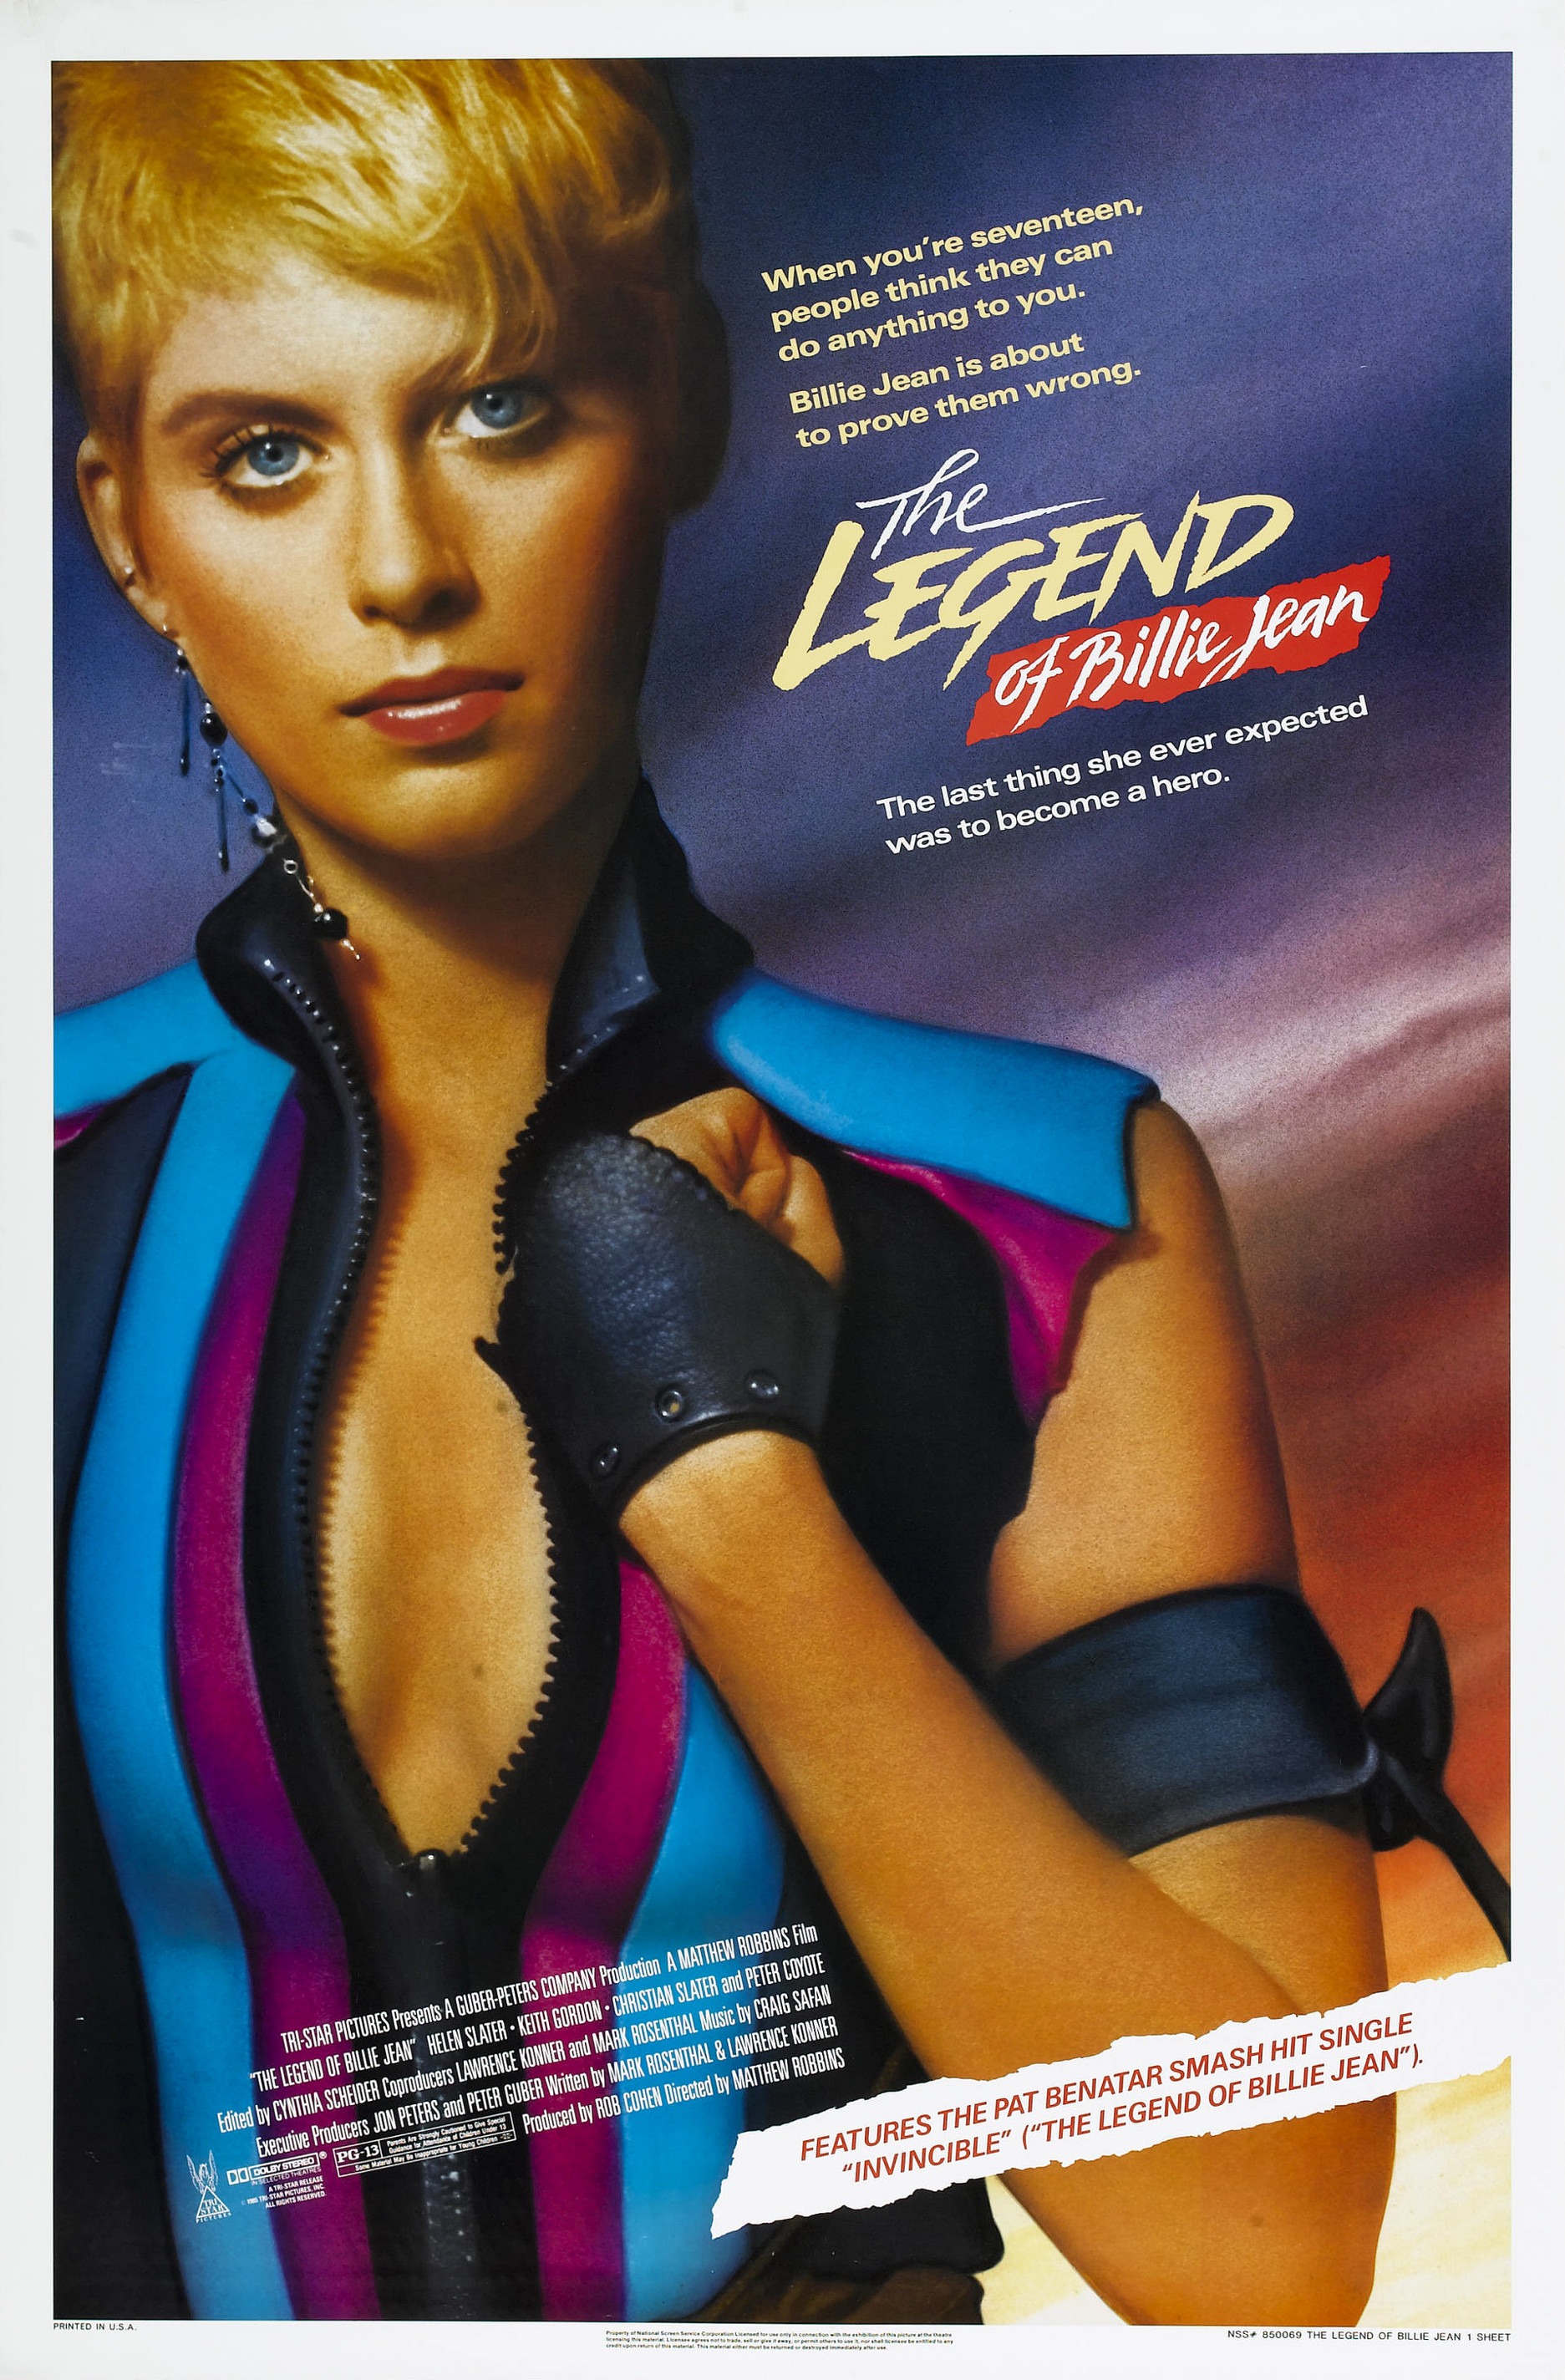 legend 1985 poster